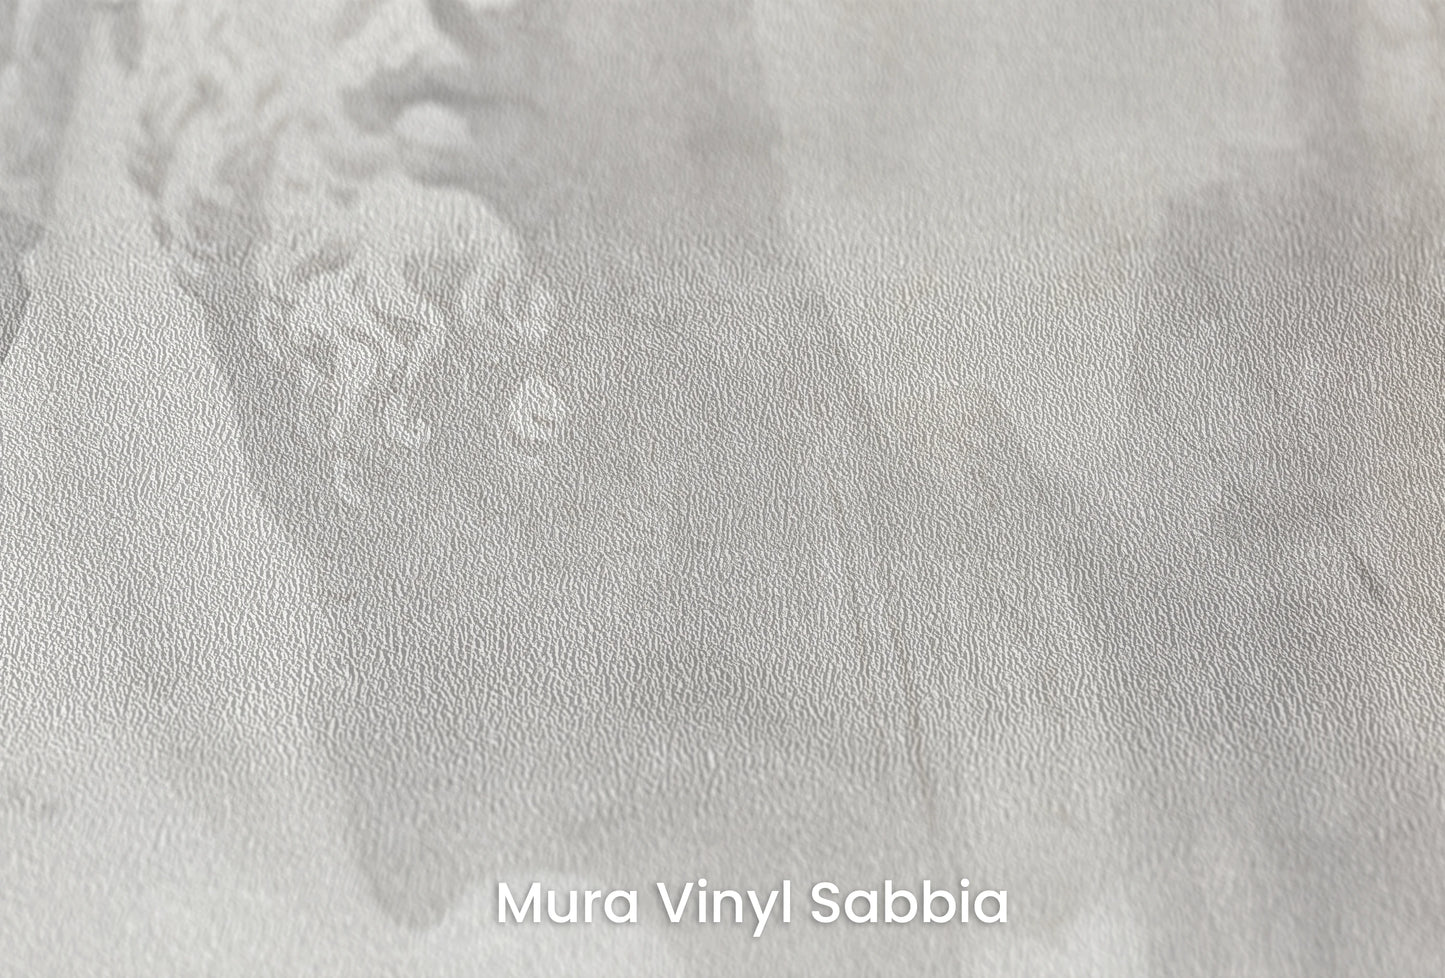 Zbliżenie na artystyczną fototapetę o nazwie Stoic Duo na podłożu Mura Vinyl Sabbia struktura grubego ziarna piasku.